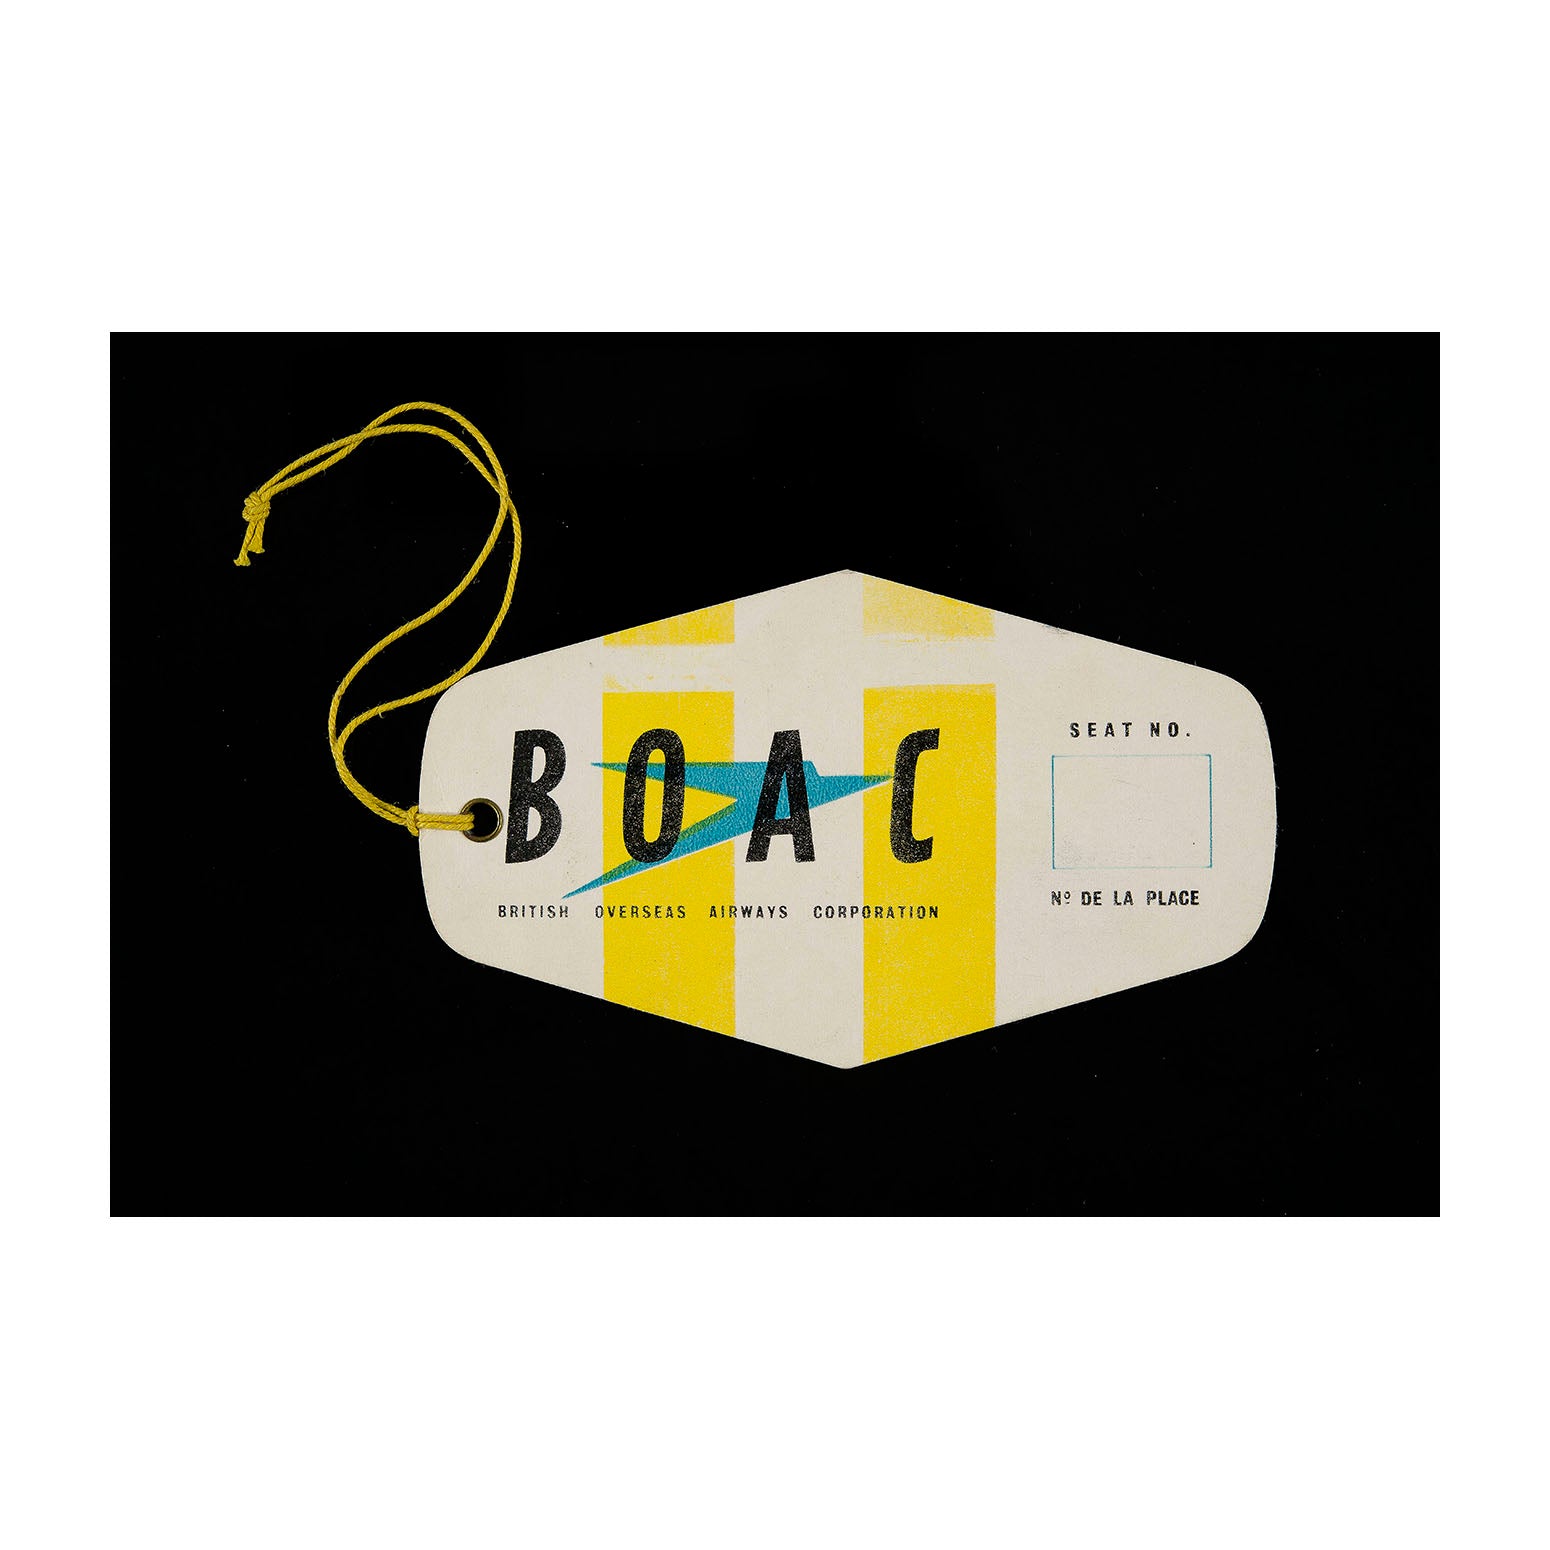 BOAC Luggage Identification tag